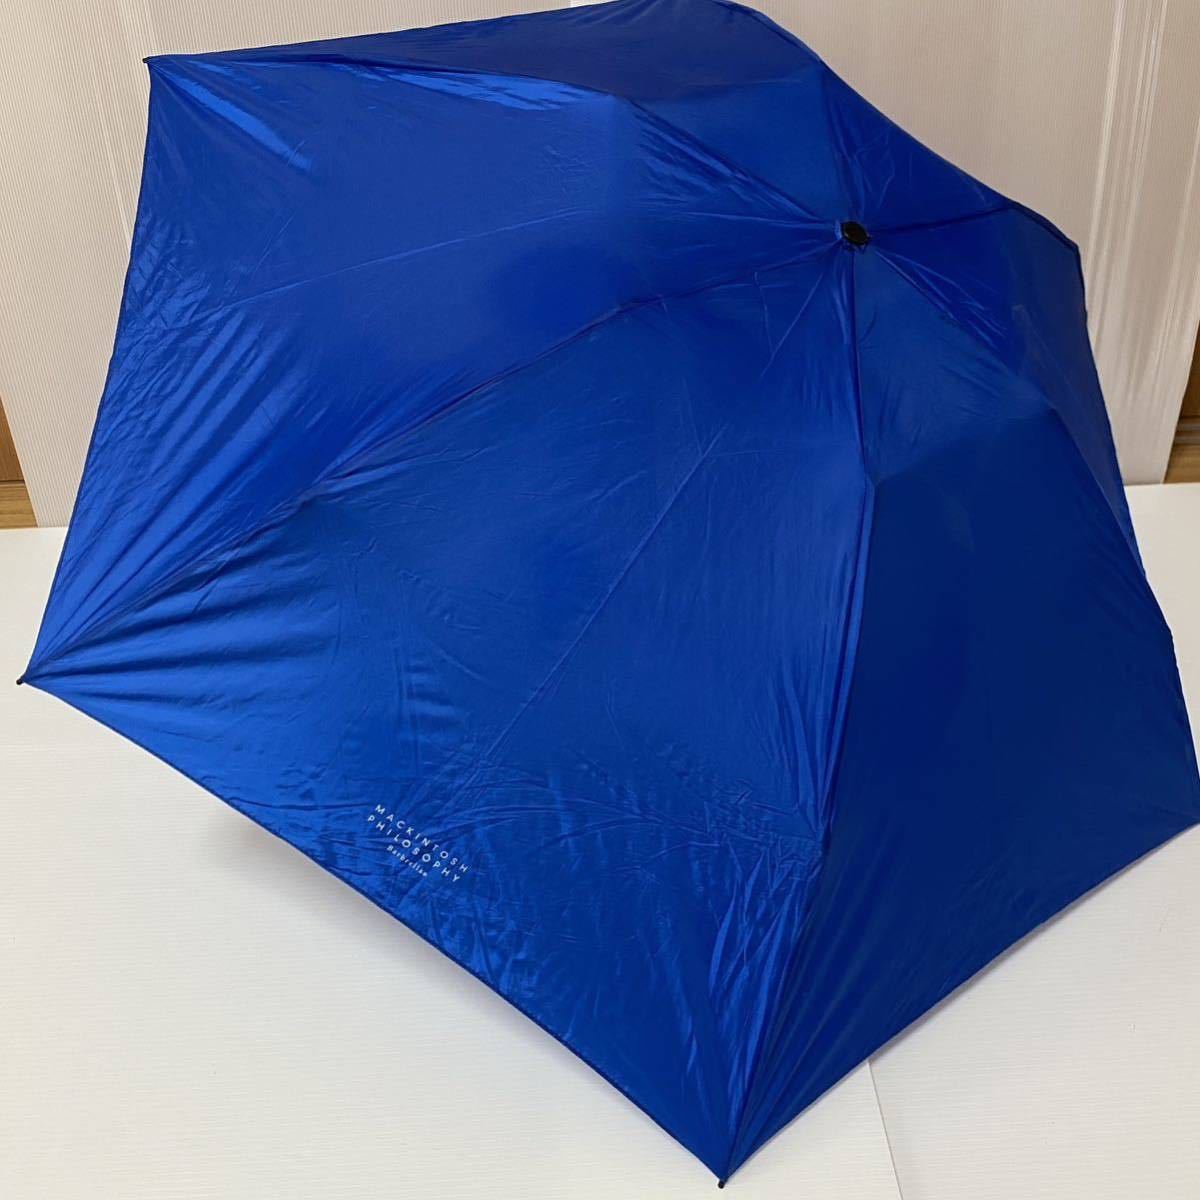 う2306102 MACKINTOSH PHILOSOPHY マッキントッシュ フィロソフィー 折りたたみ傘 雨傘の画像1